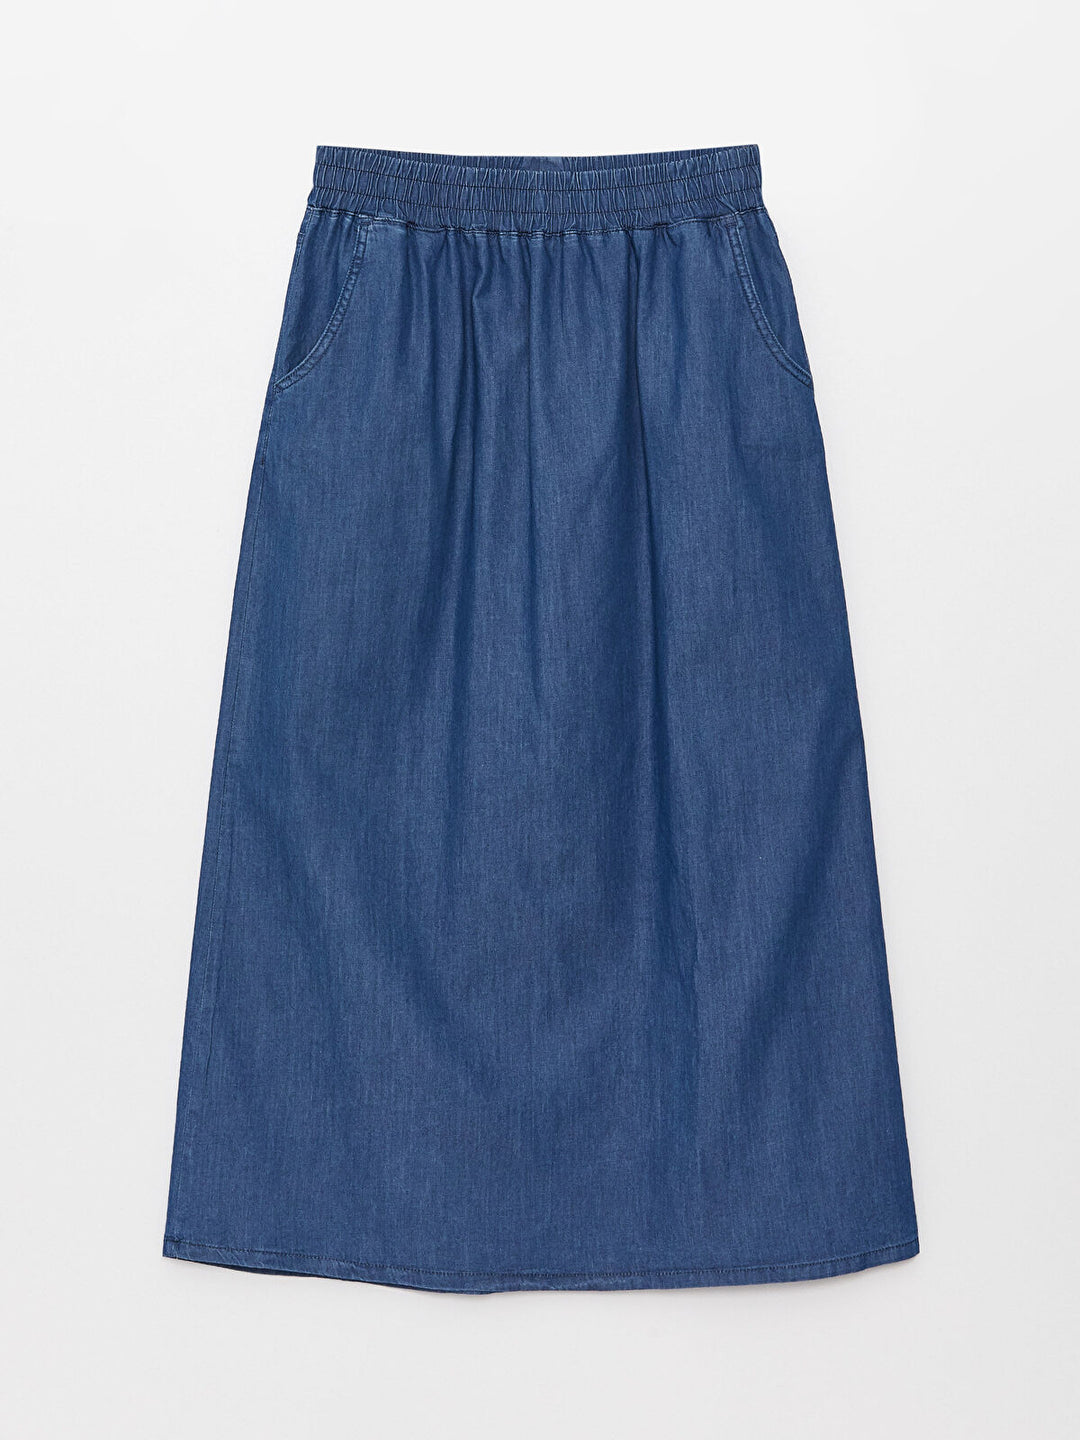 Elastic Waist A-Line Women Jean Skirt